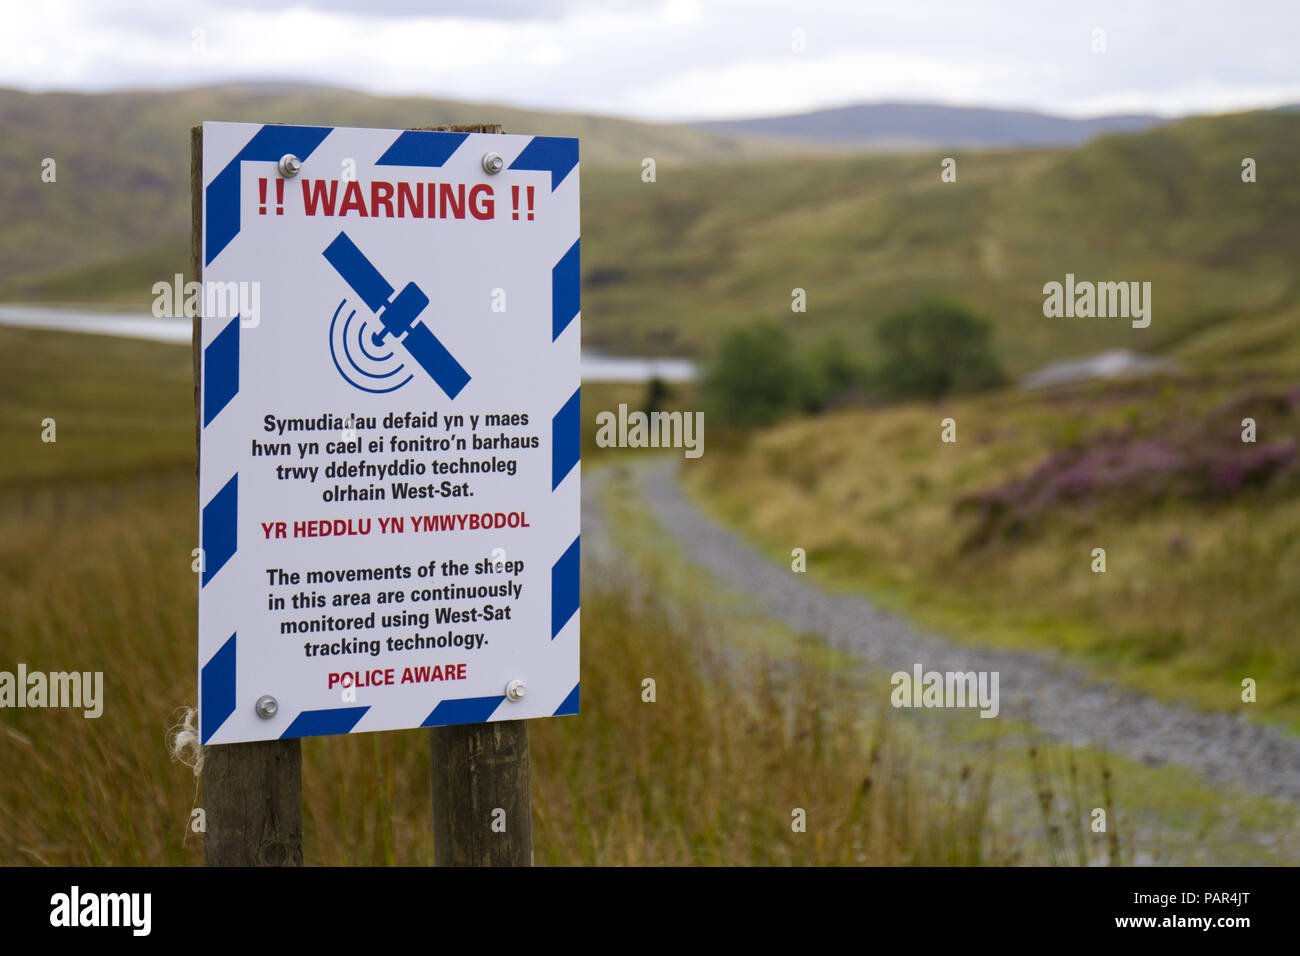 In Englisch und Walisisch Zeichen erscheinen, dass Schafe zu warnen sind satillite verfolgt. In einem abgelegenen Berggebieten Lage. Powys, Wales. Stockfoto